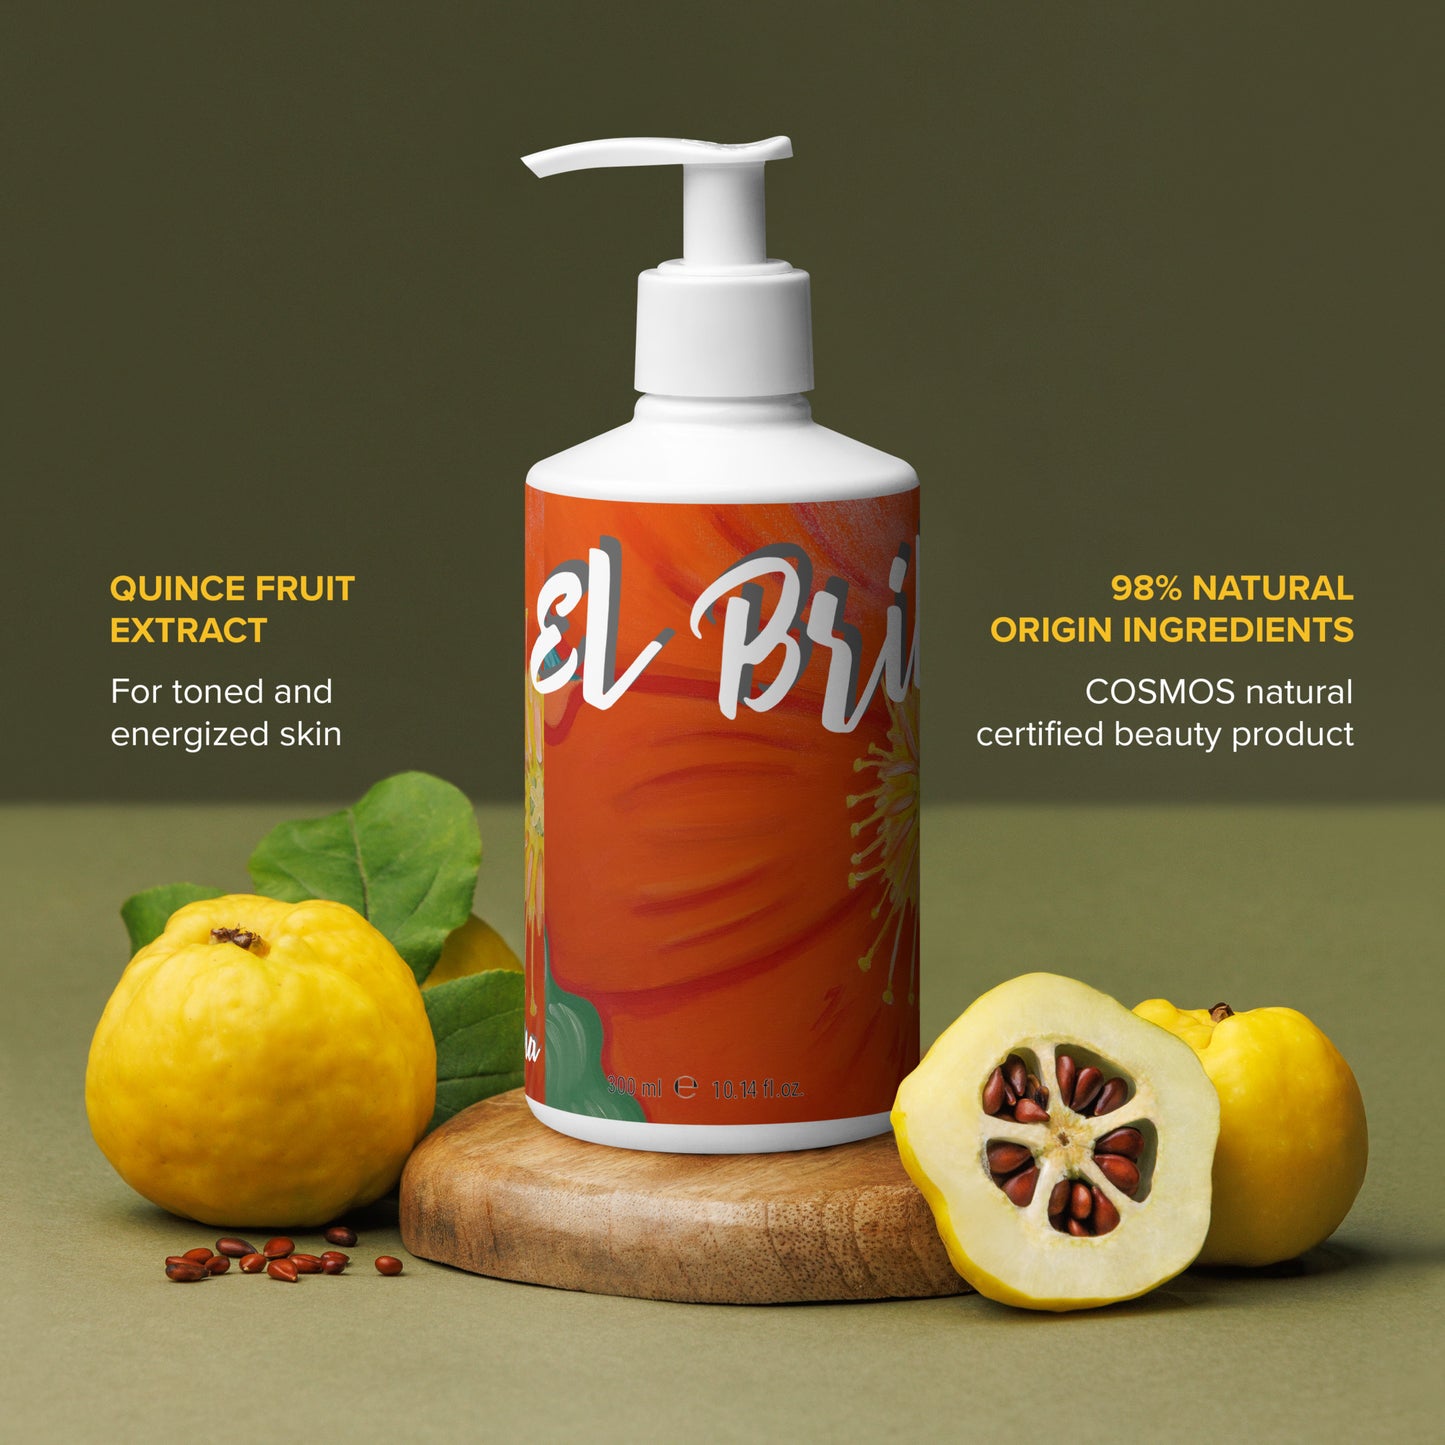 El Brillo by Irma Refreshing hand & body wash